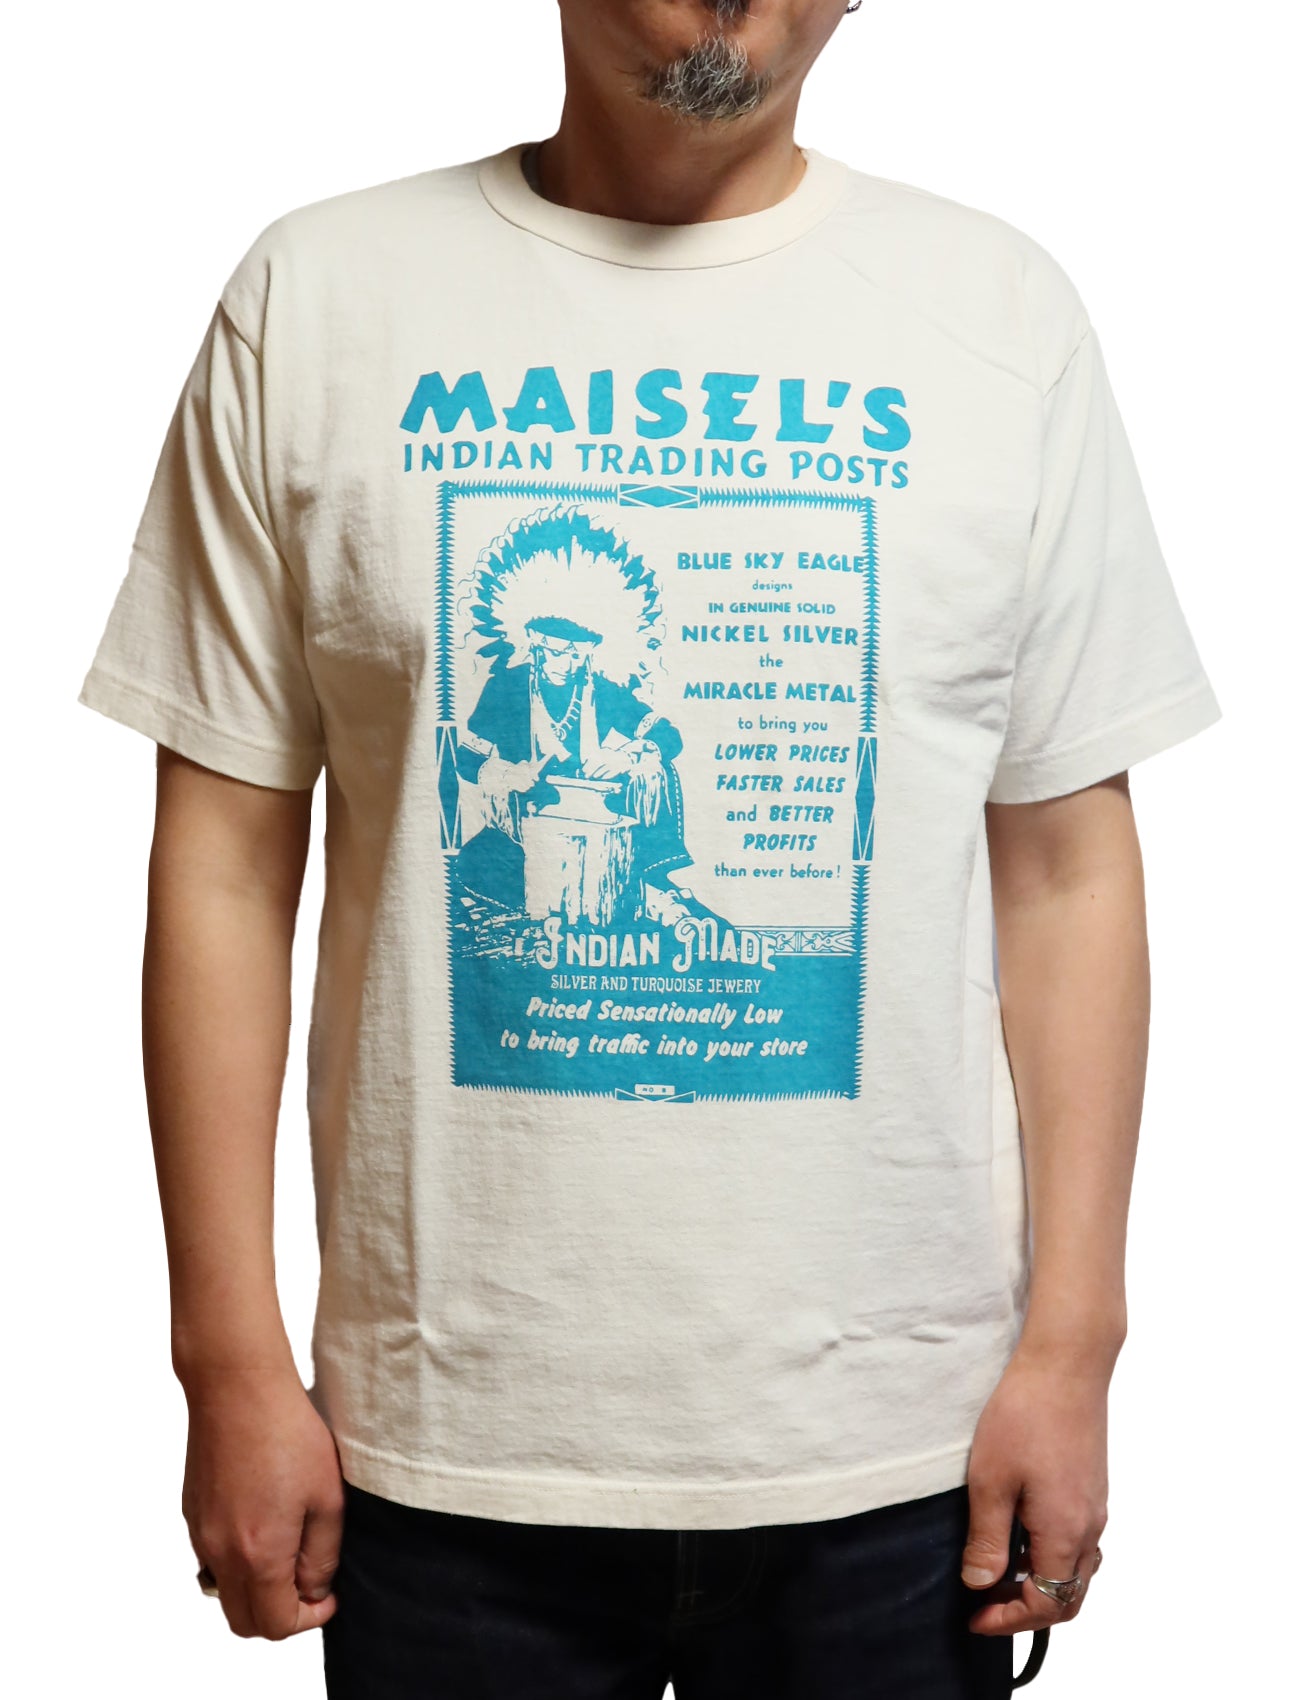 GUNZ MAISEL'S Men's Short Sleeve T-Shirt 444G085 Off White Made in Japan